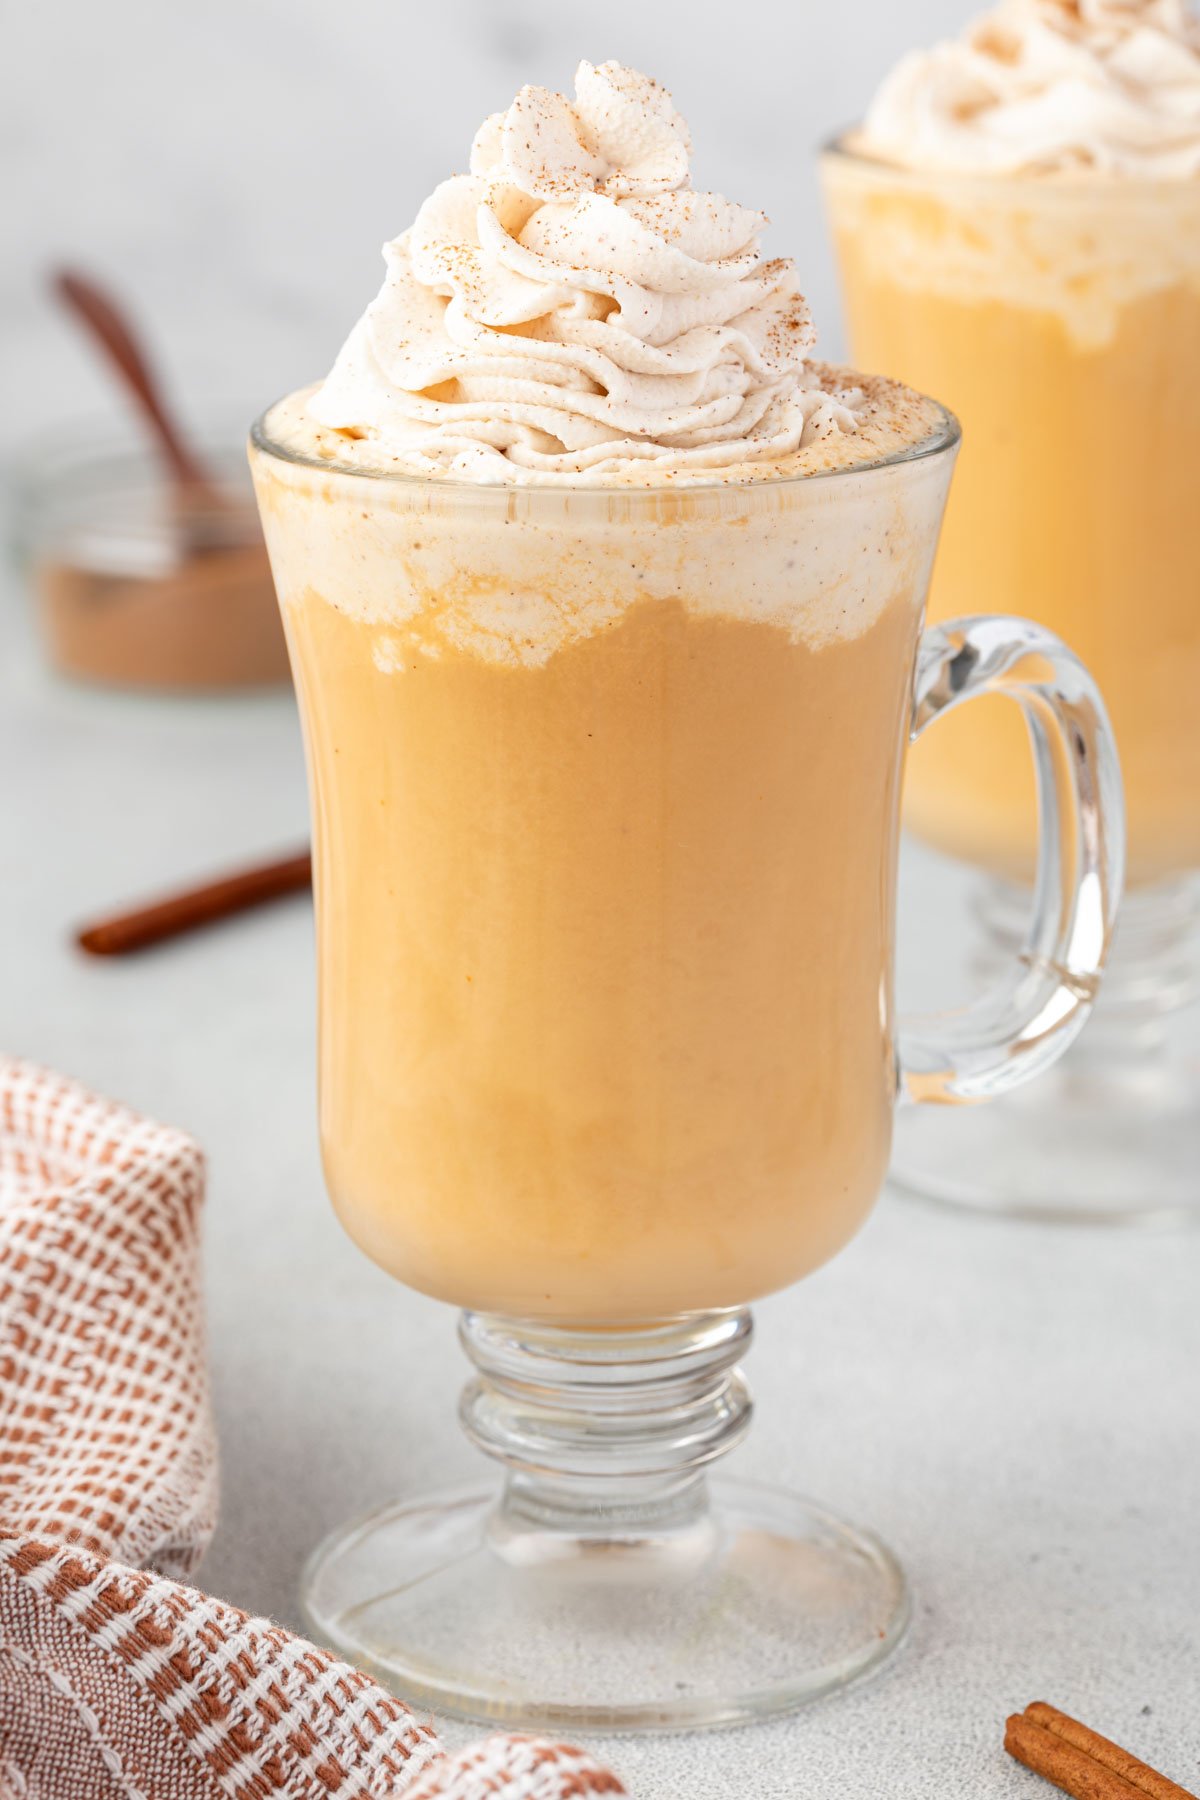 Pumpkin spice latte in a glass mug.